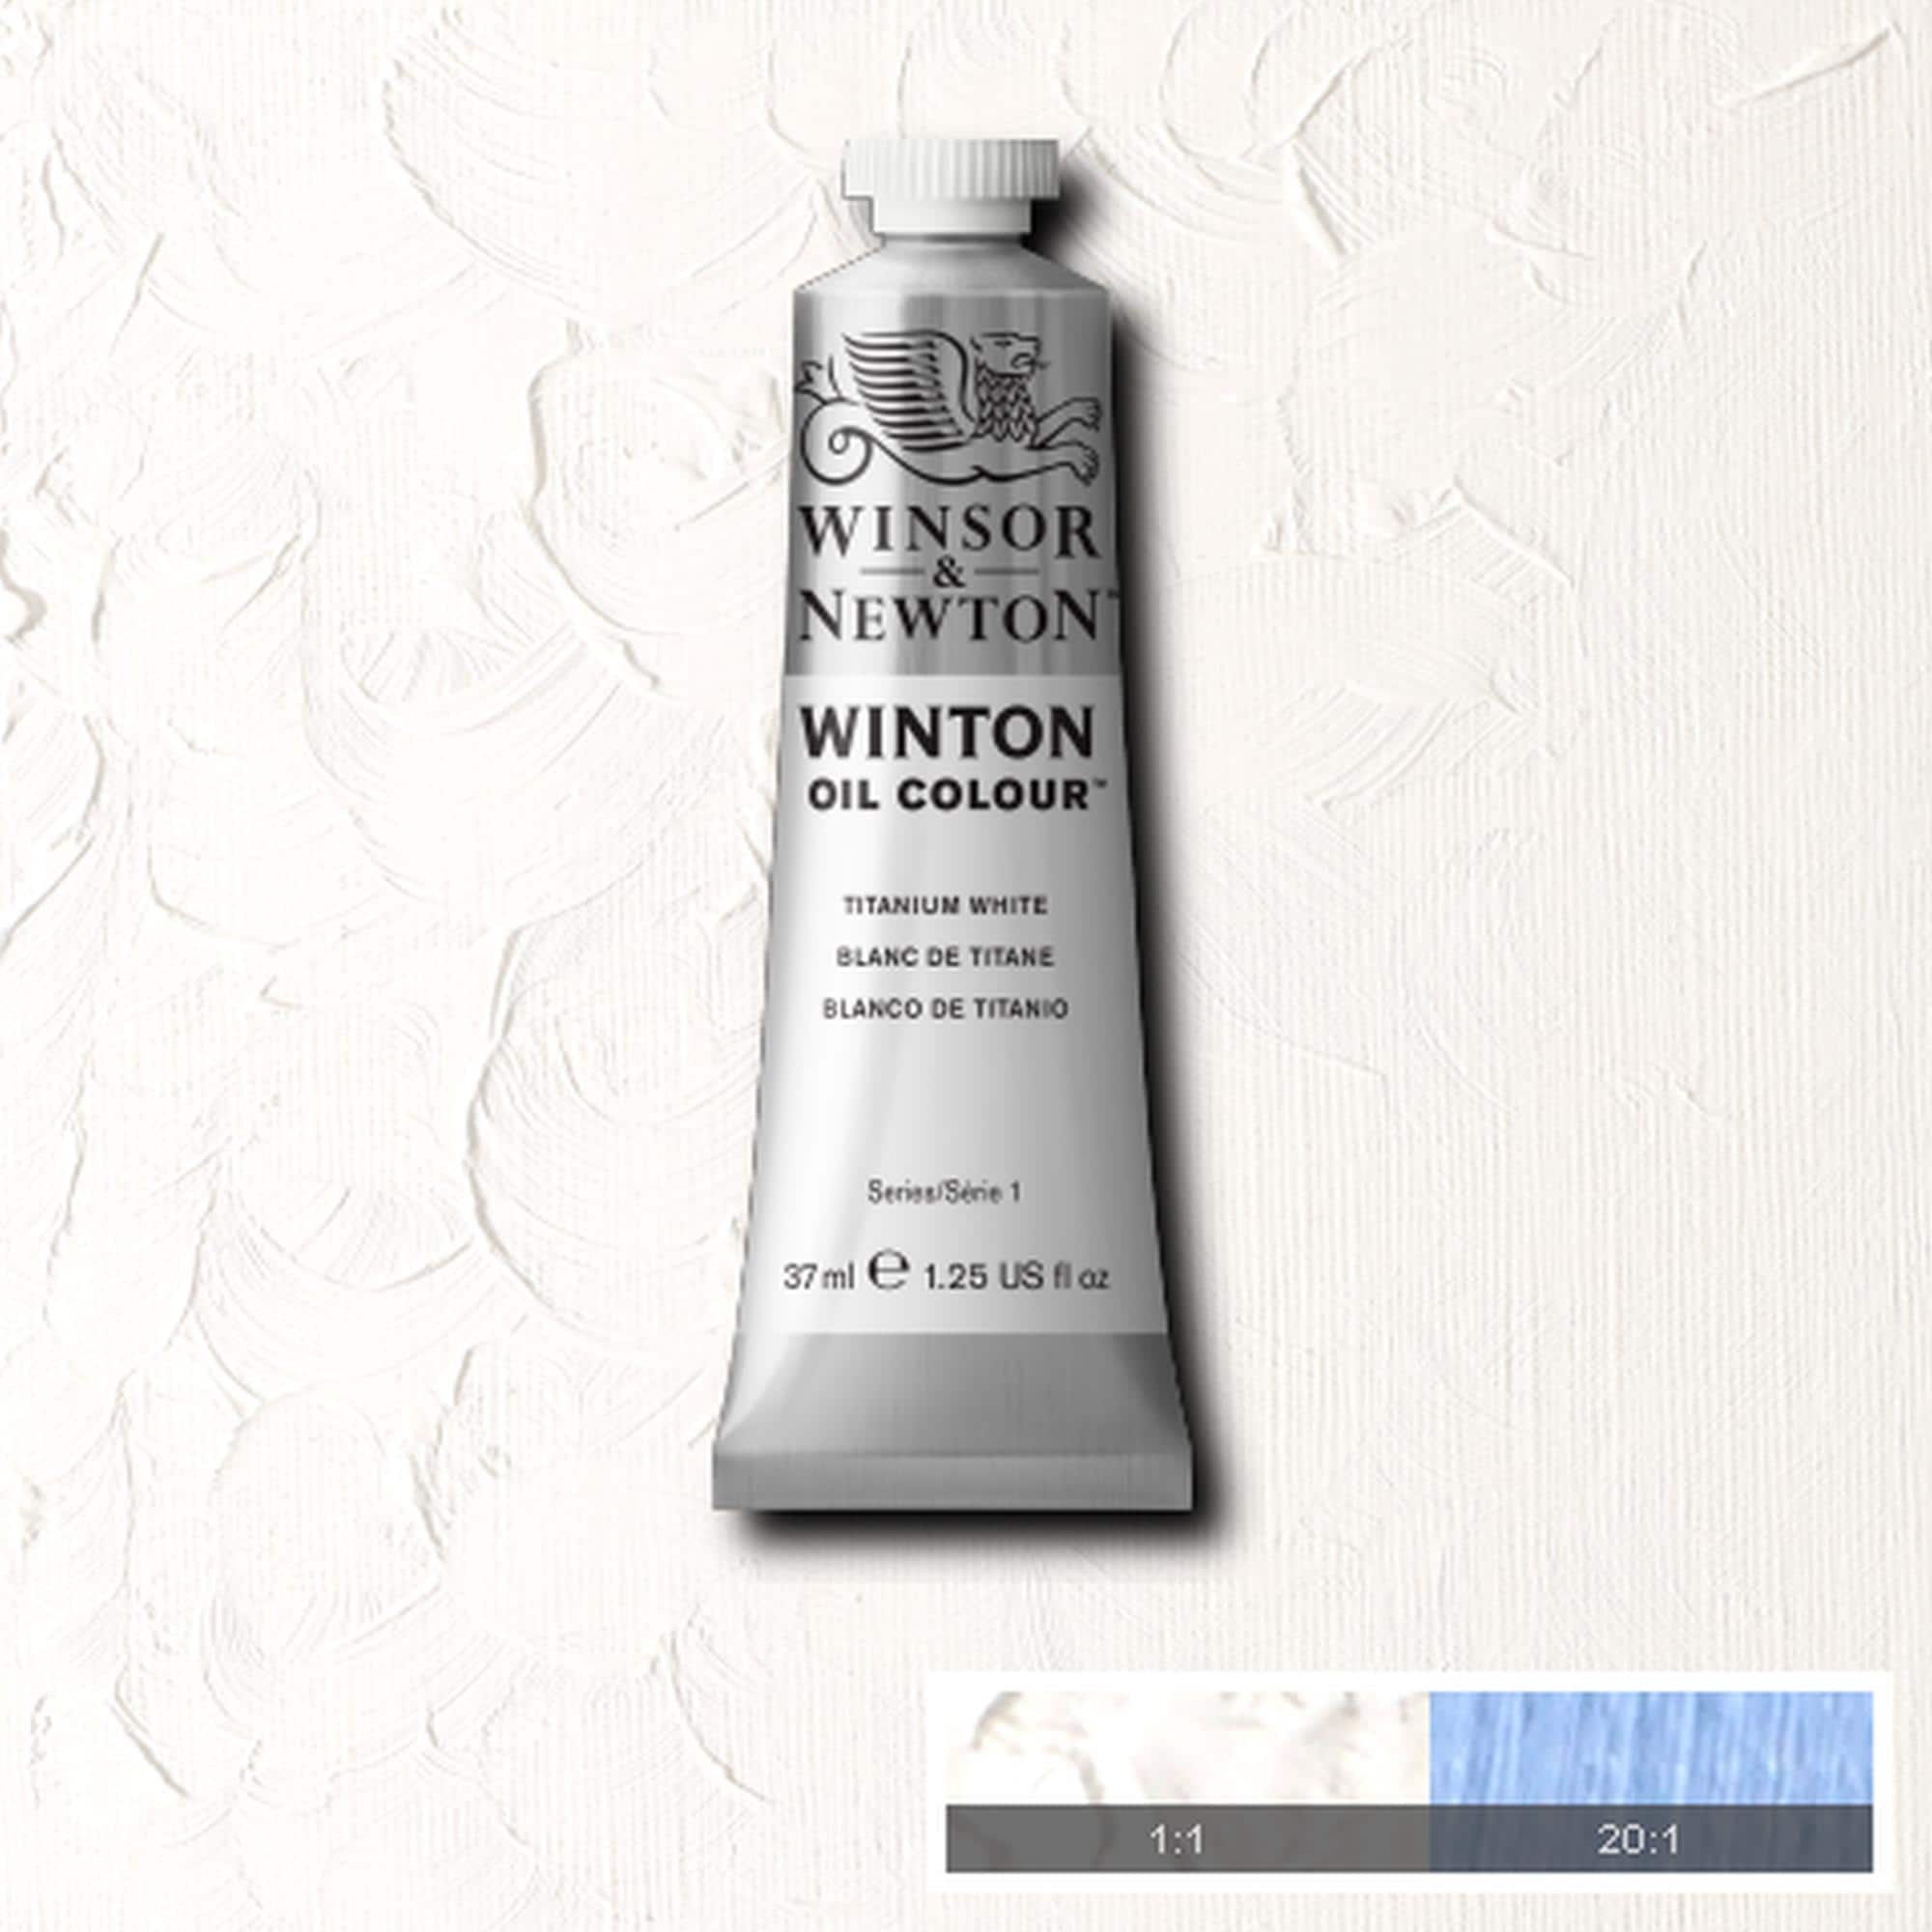 Winsor &#x26; Newton&#xAE; Winton Oil Colour&#x2122; Tube, 37mL